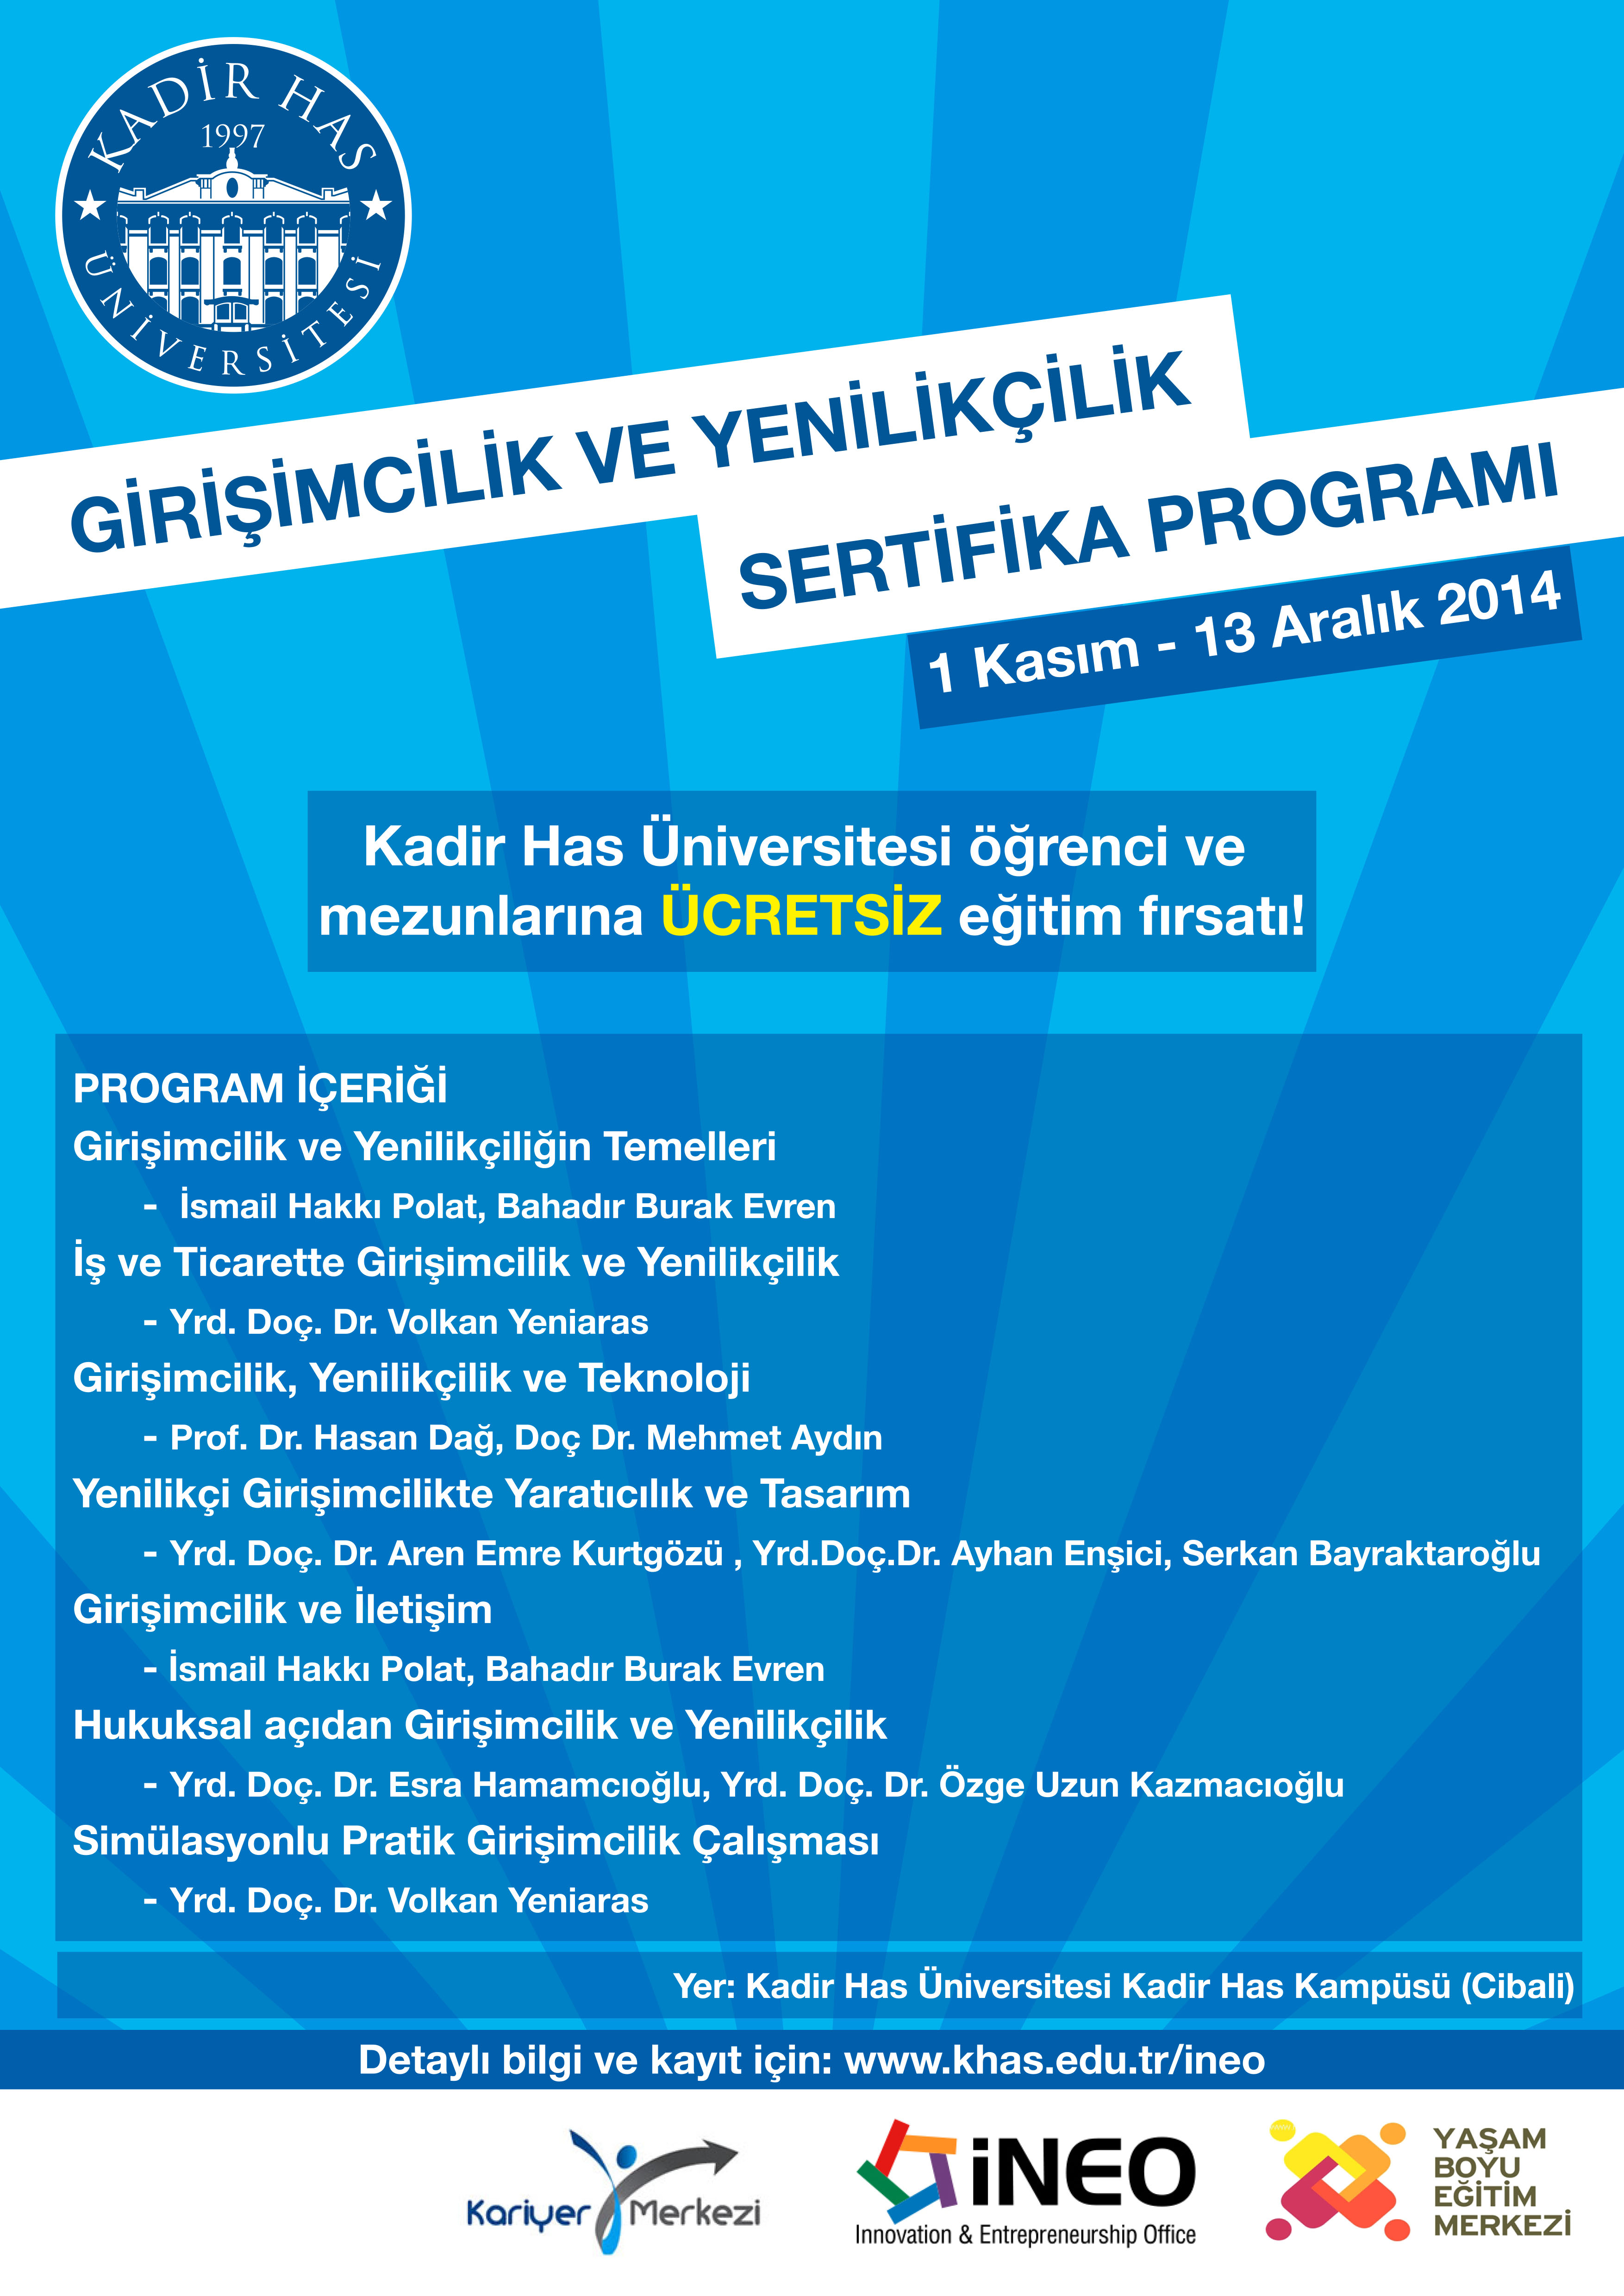 Kadir Has Üniversitesi Öğrenci ve Mezunlarına Ücretsiz Girişimcilik ve Yenilikçilik Sertifika Programı